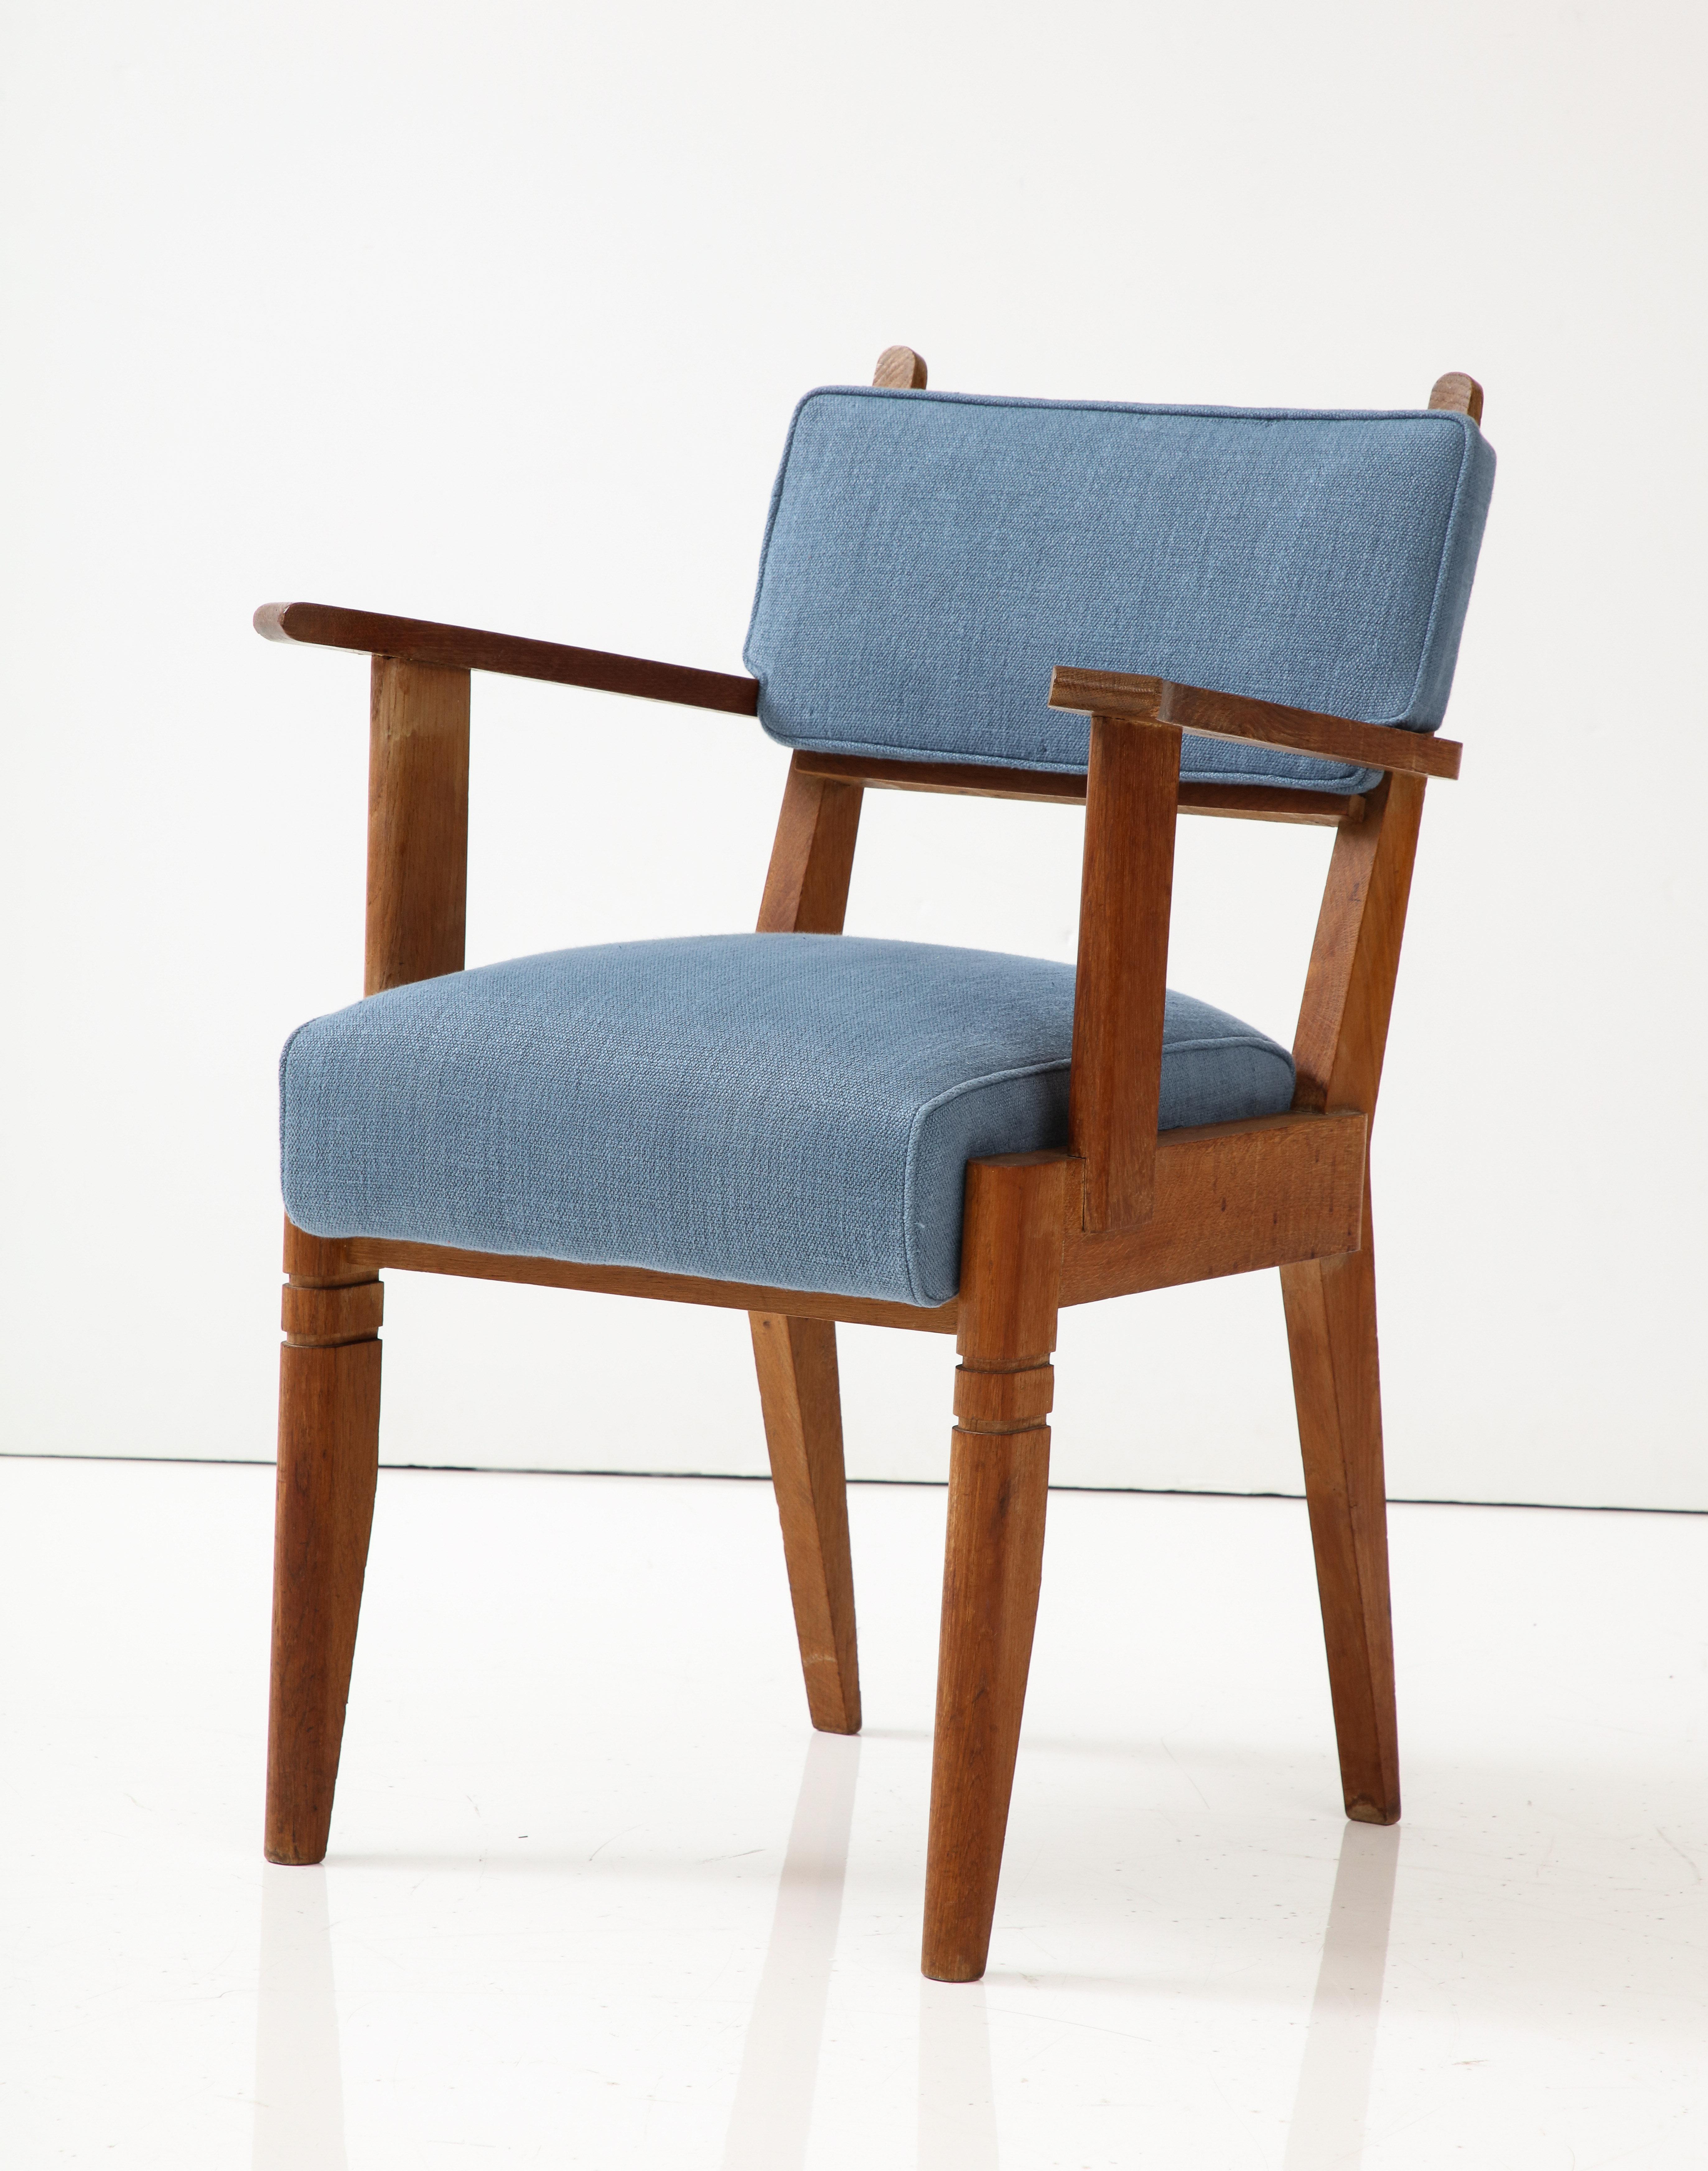 Zwei weitere Stühle sind mit einem rostroten Leinenstoff bezogen.

Eleganter, hoher Stuhl mit bequemer Polsterung und eleganten Linien. Neue Kissen mit blauen Leinenbezügen.